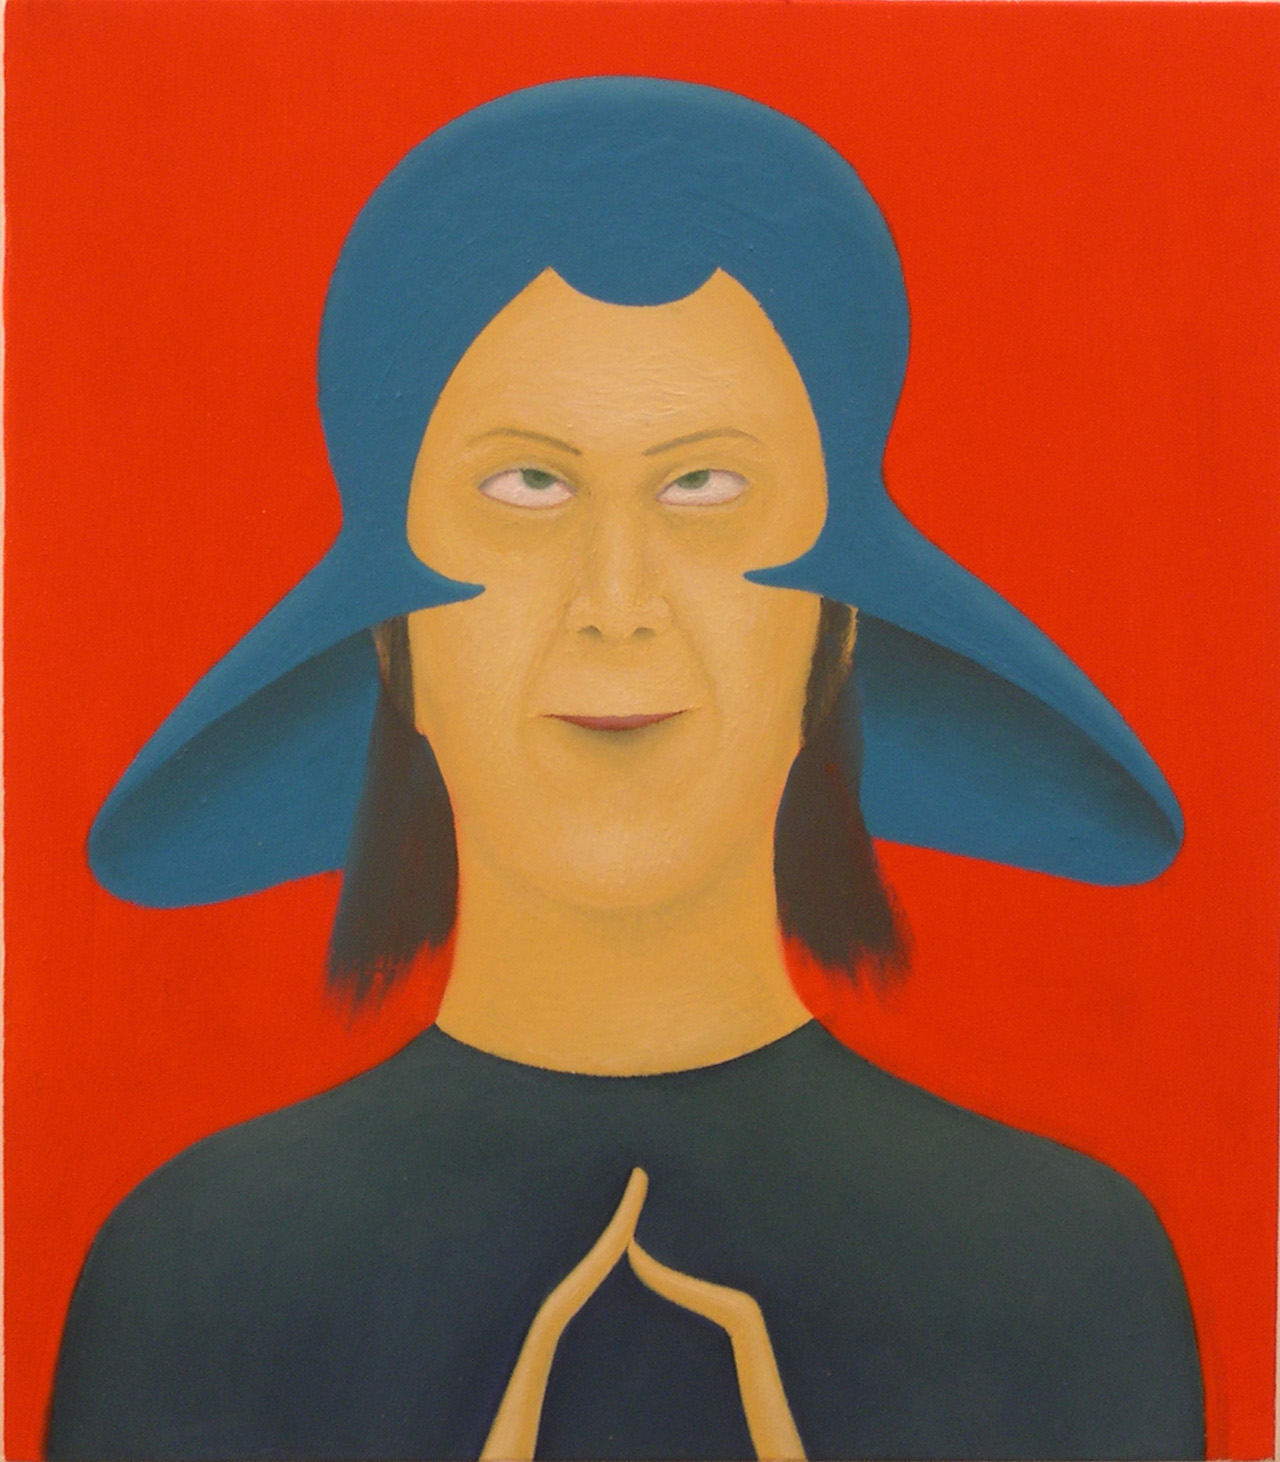 Giuliano Guatta, L’uomo venuto dallo spazio, 2003, cm 40×35, olio su tavola